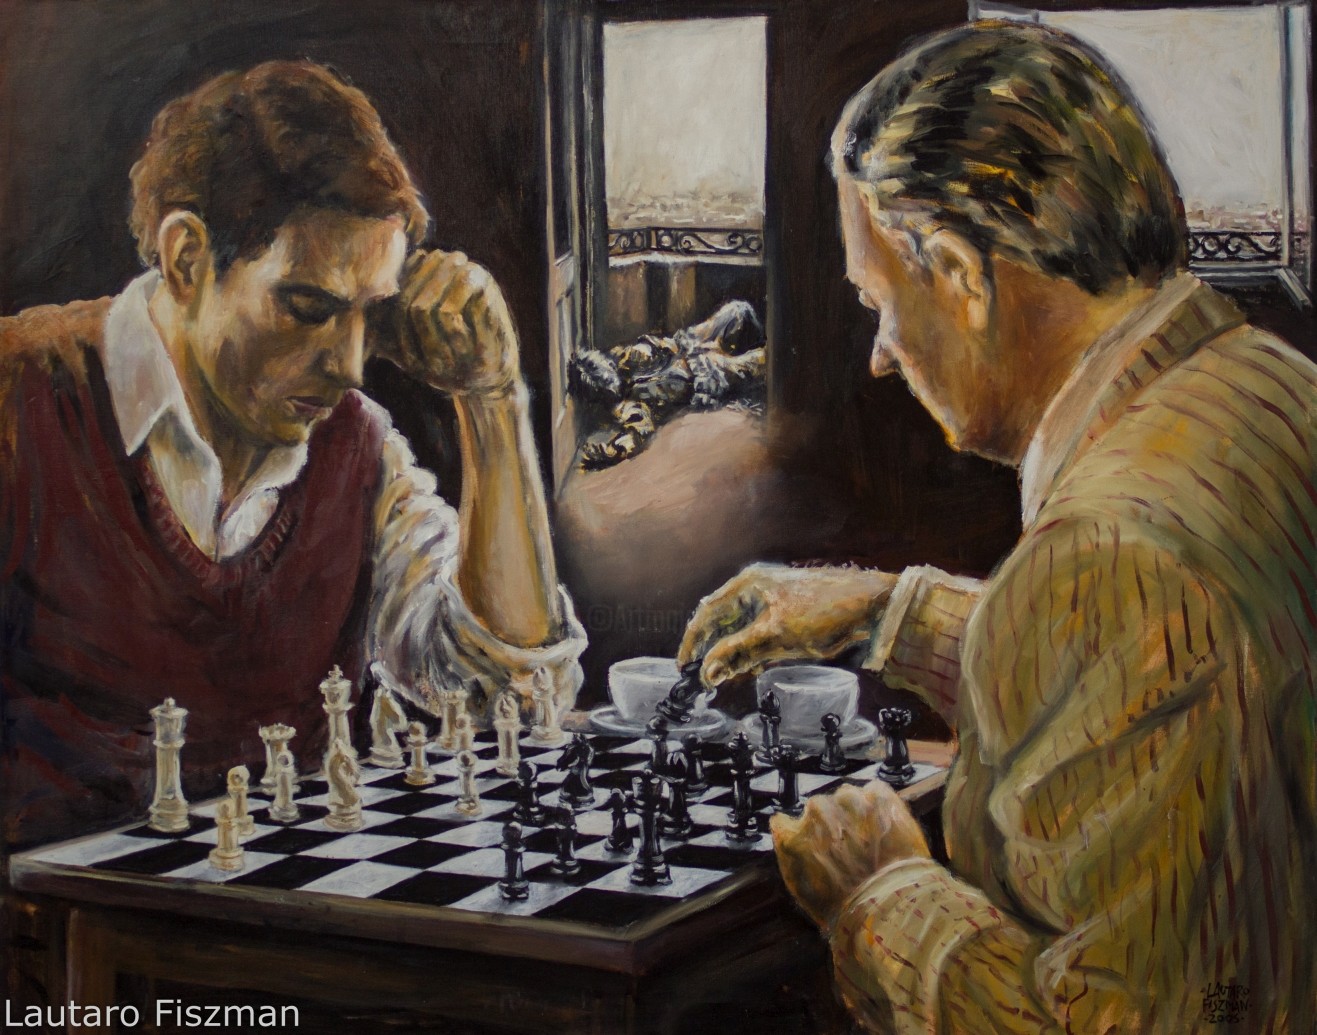 Увлечься игрой в шахматы. Шахматисты картина Джеймса Норткота. Мясоедов игра в шахматы. Картина Марселя Дюшана "шахматная партия".